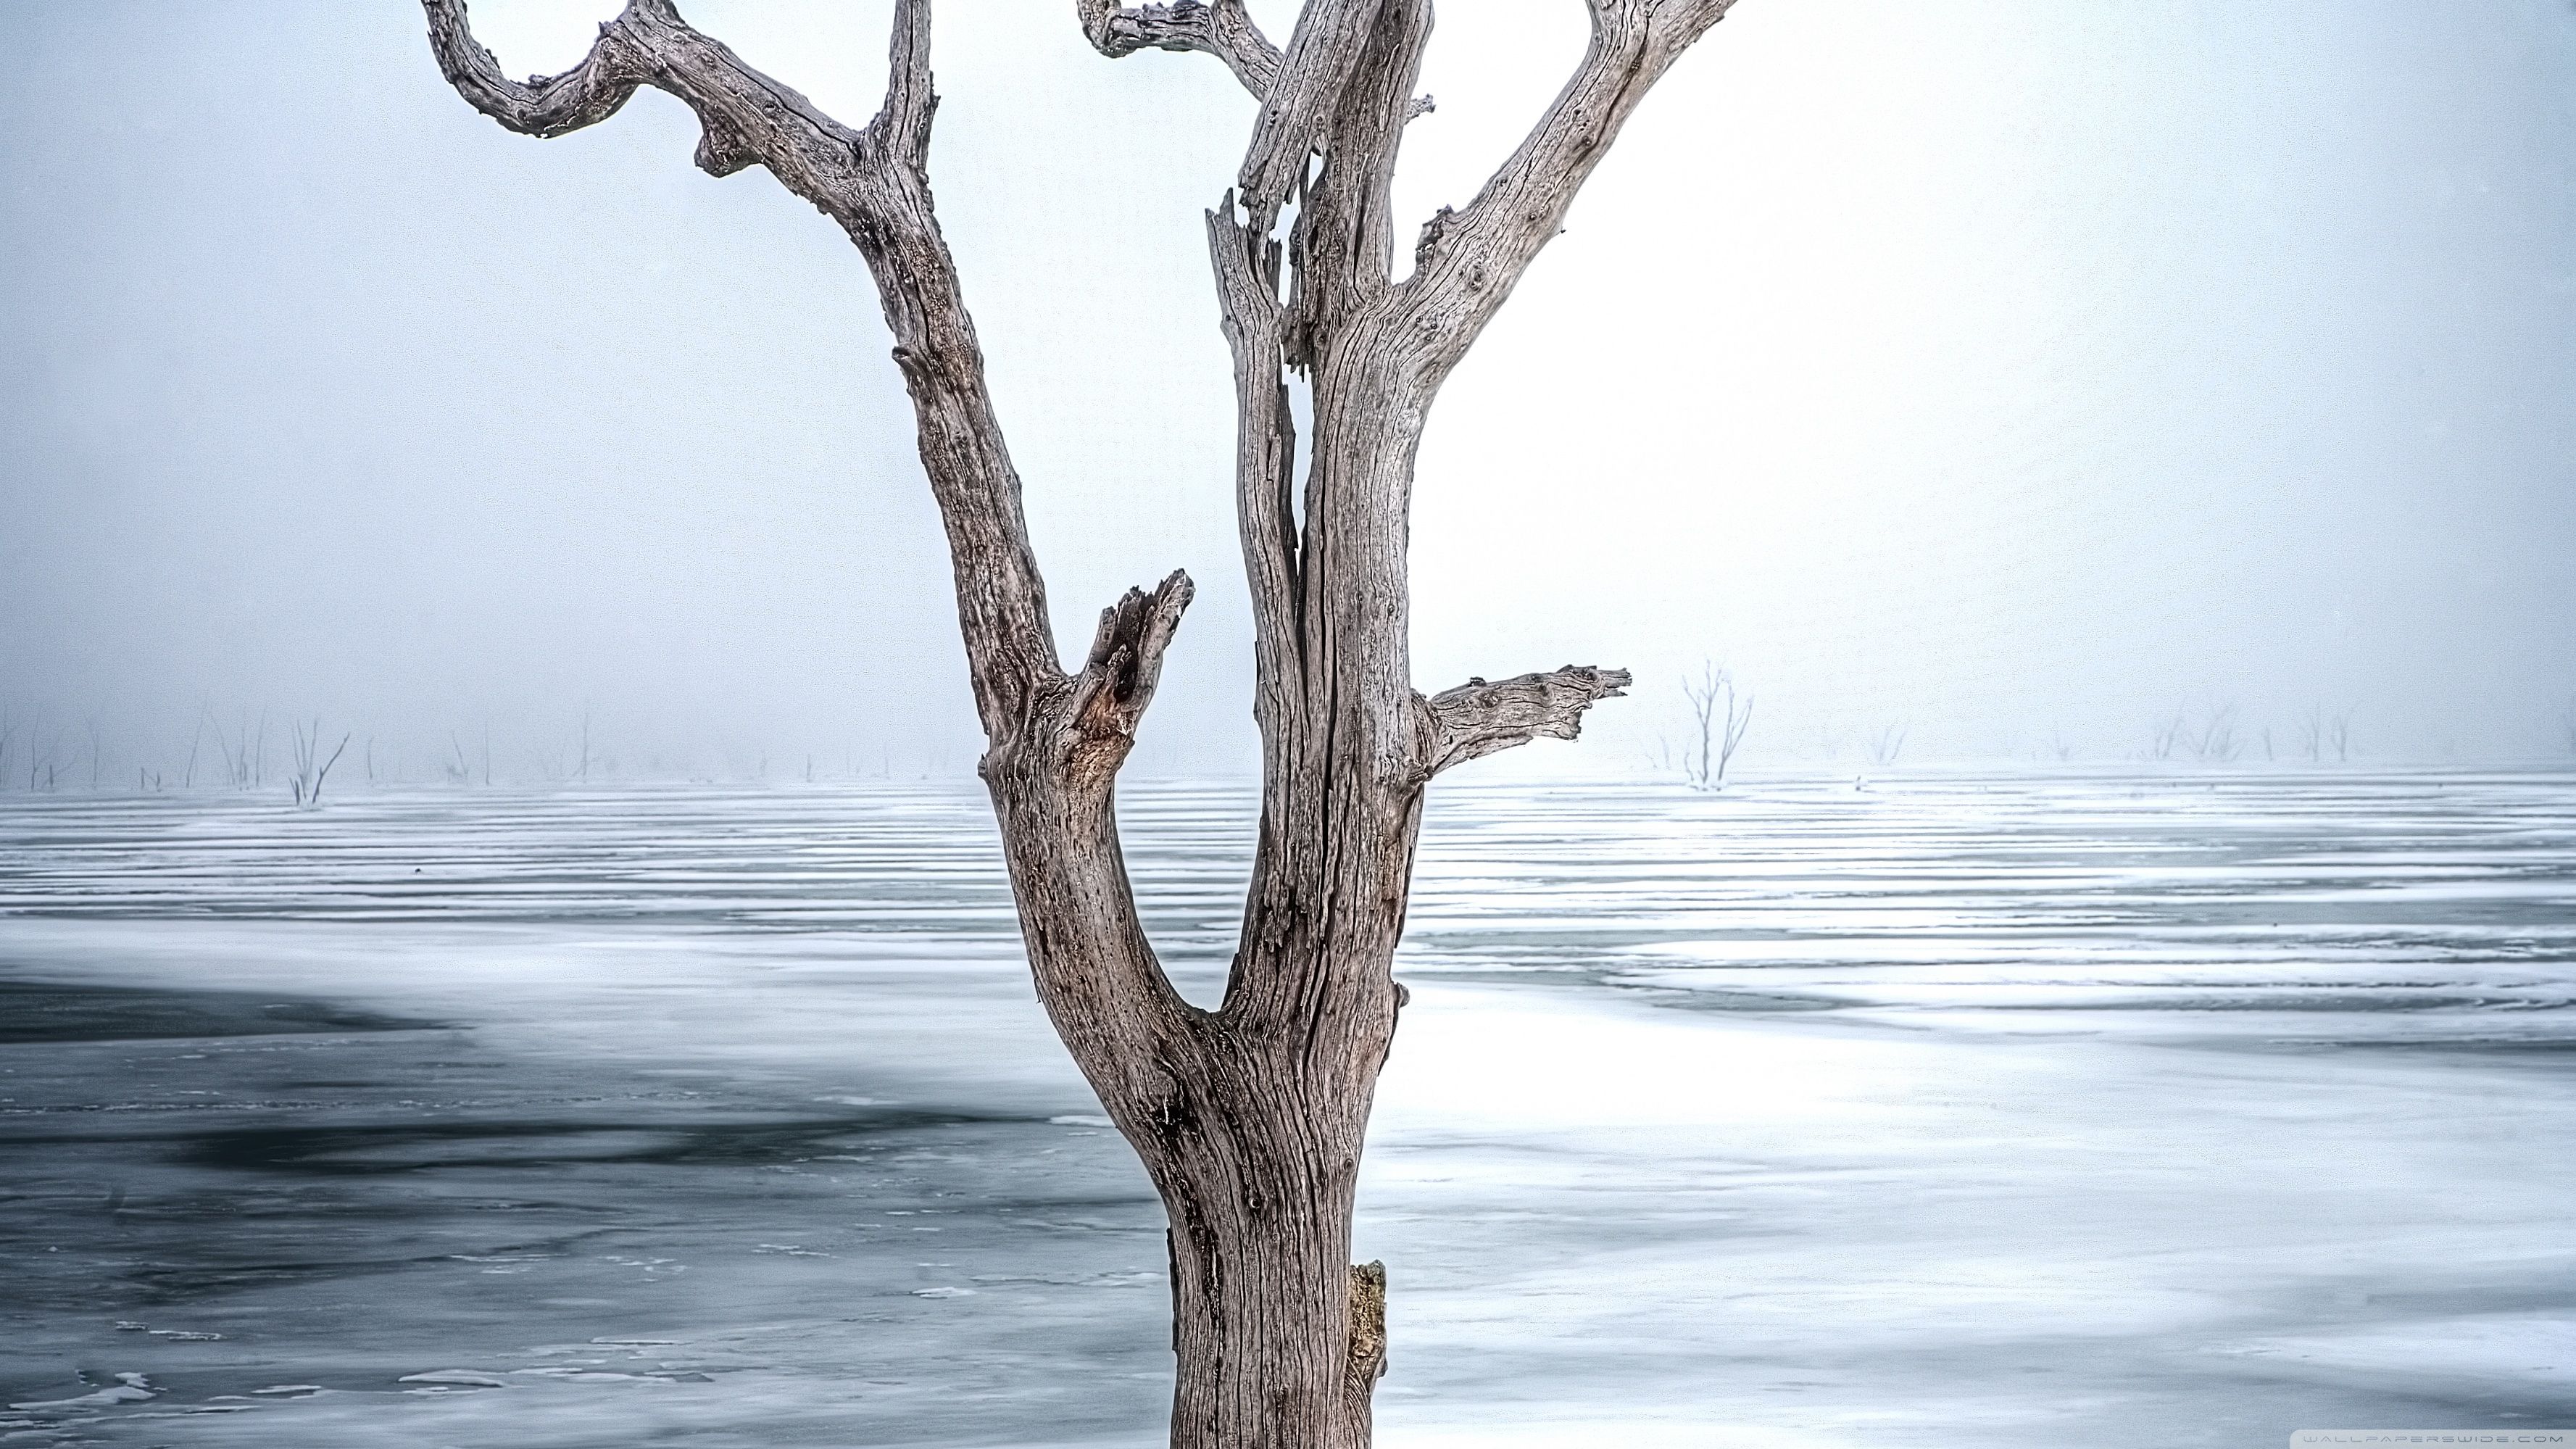 Dead Tree, Clinton Lake Ultra HD .wallpaperwide.com